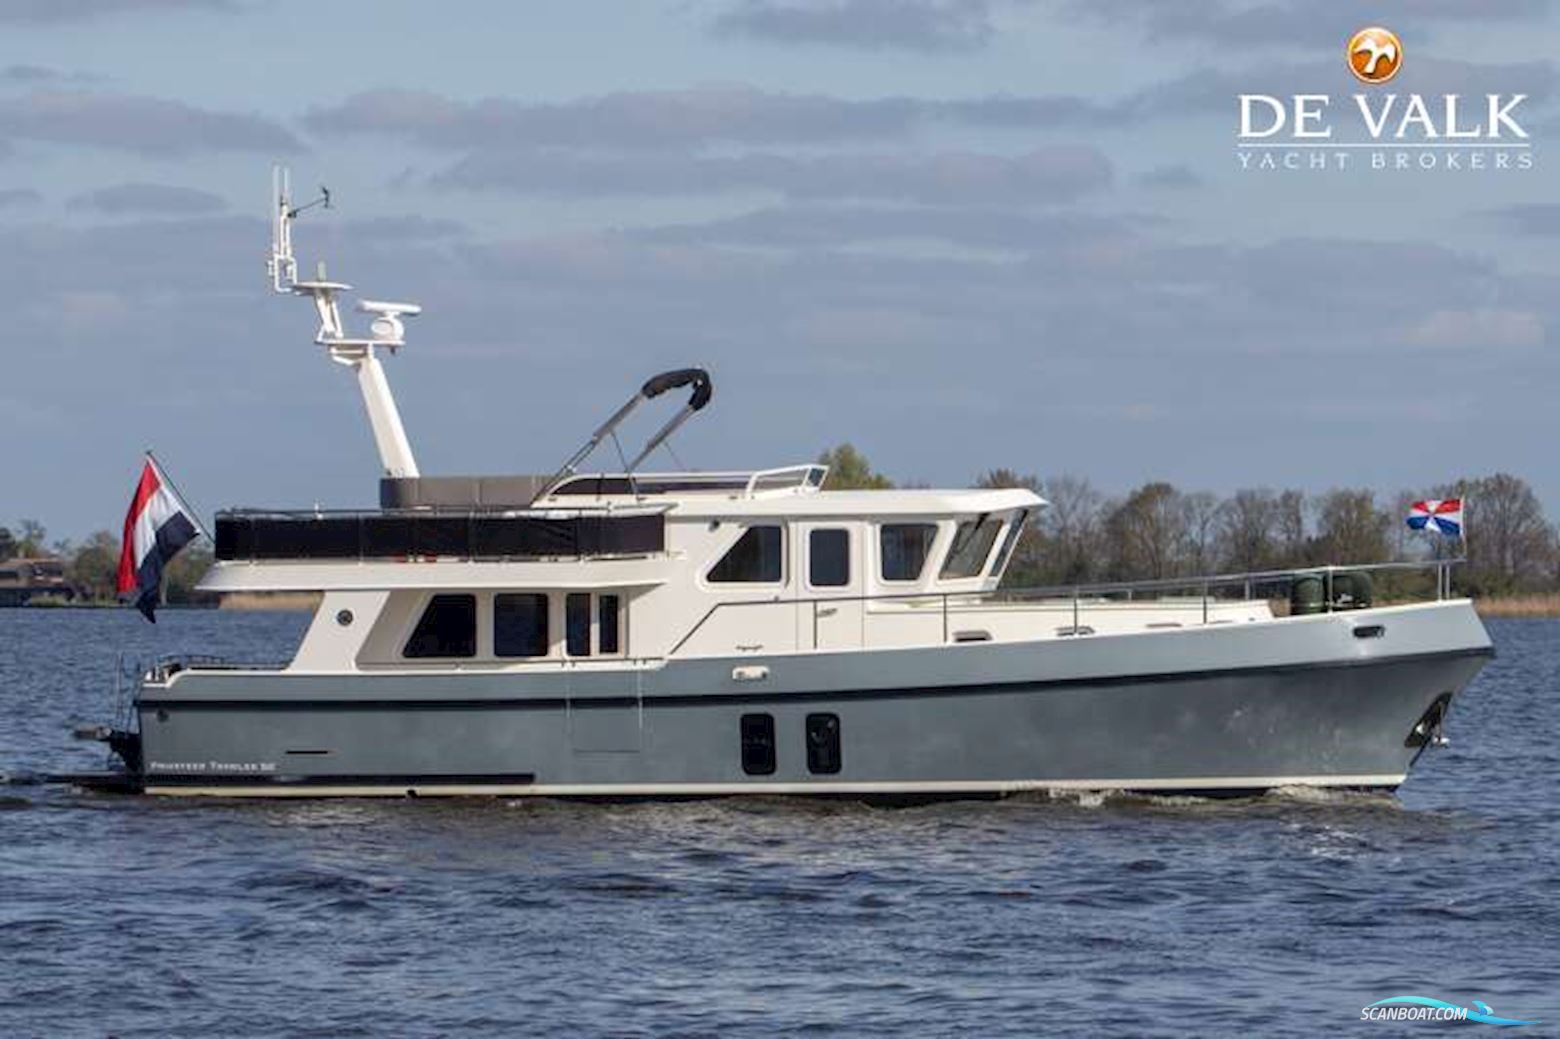 Privateer Trawler 50 Motorbåt 2017, med John Deere motor, Holland